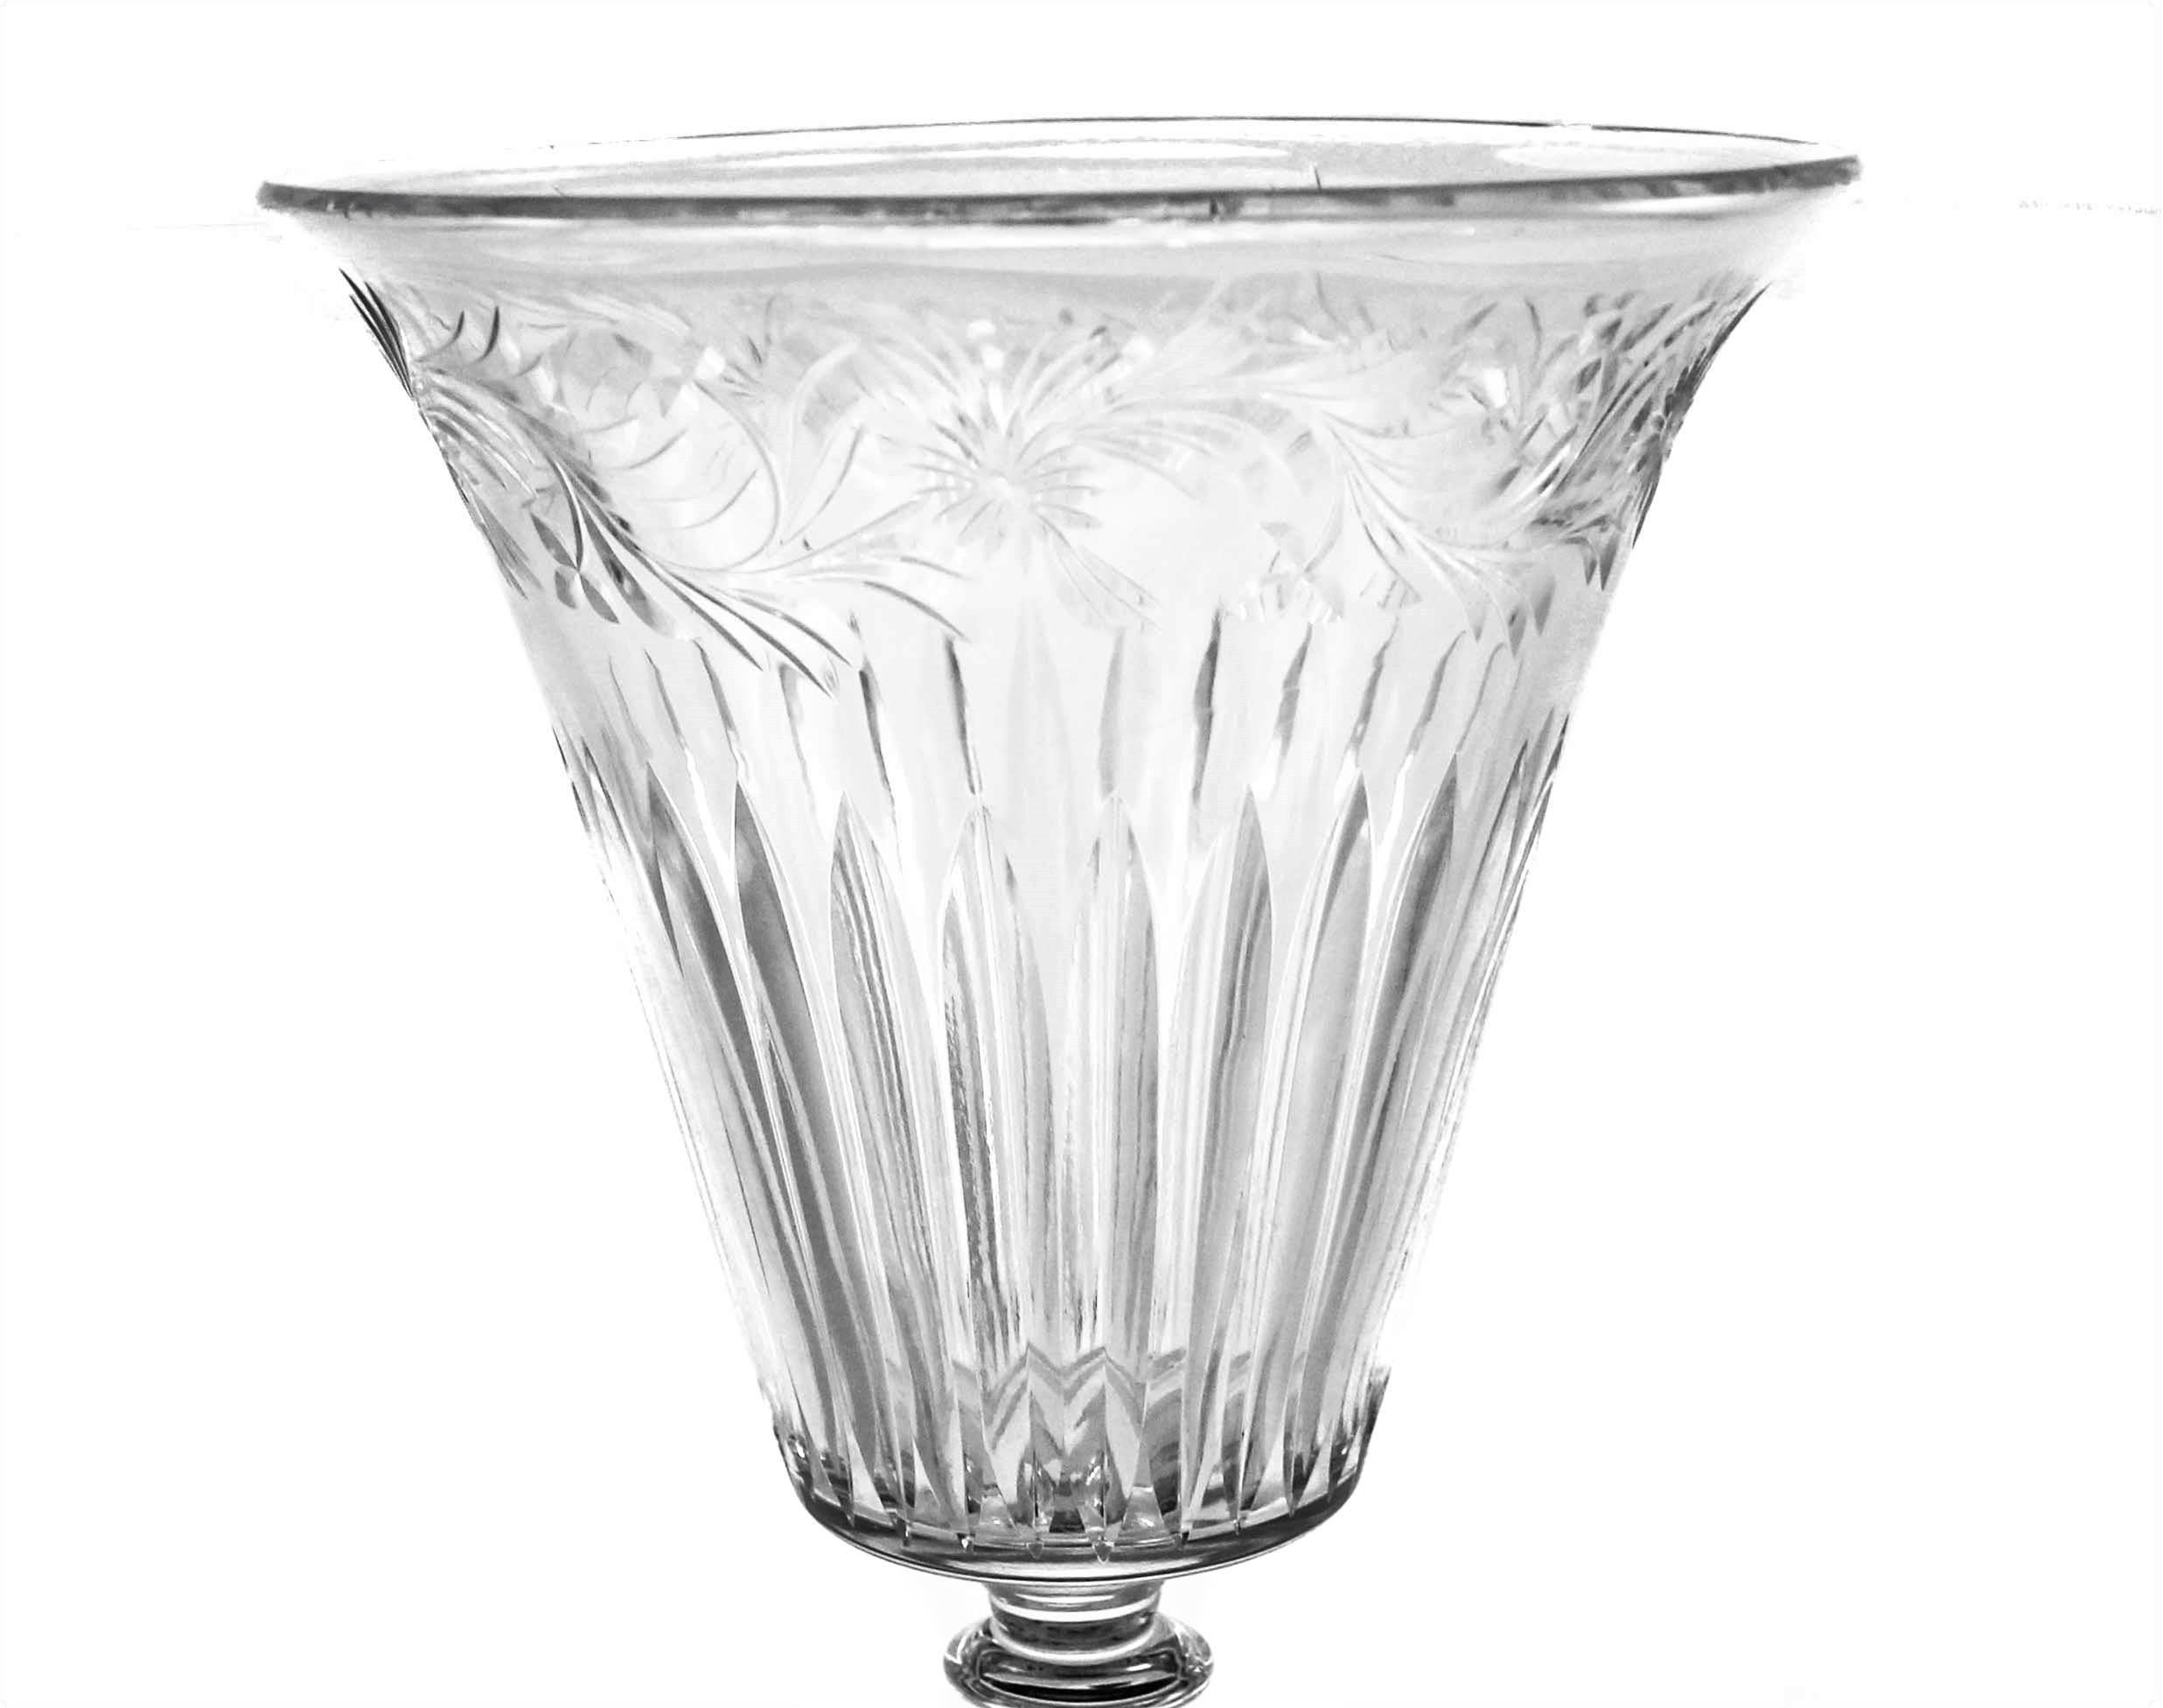 Das Interessante an dieser Vase ist, dass sie eine Mischung aus Alt und Neu ist: hübsches geschliffenes Kristall an der Oberseite im Gegensatz zu der runden Kristallkugel über dem Sockel. Das Beste aus beiden Welten!